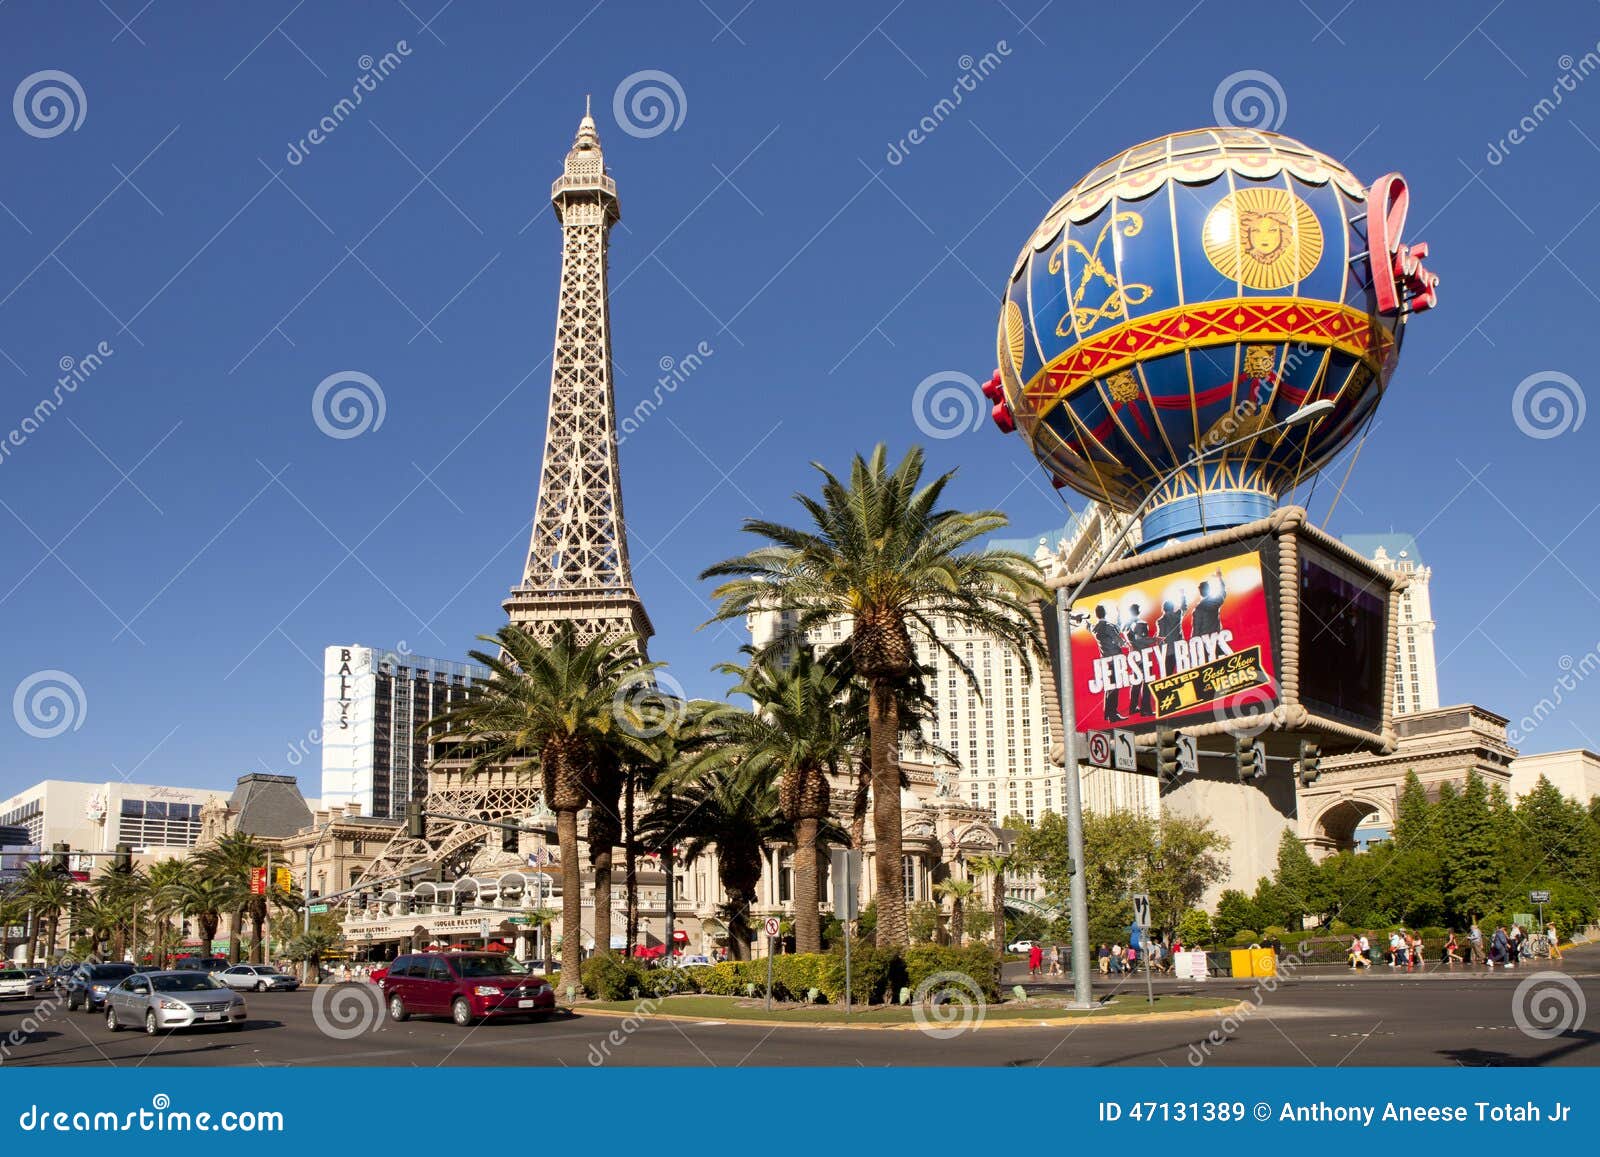 Las Vegas Photo Paris Casino Hotel Eiffel Tower Las Vegas 